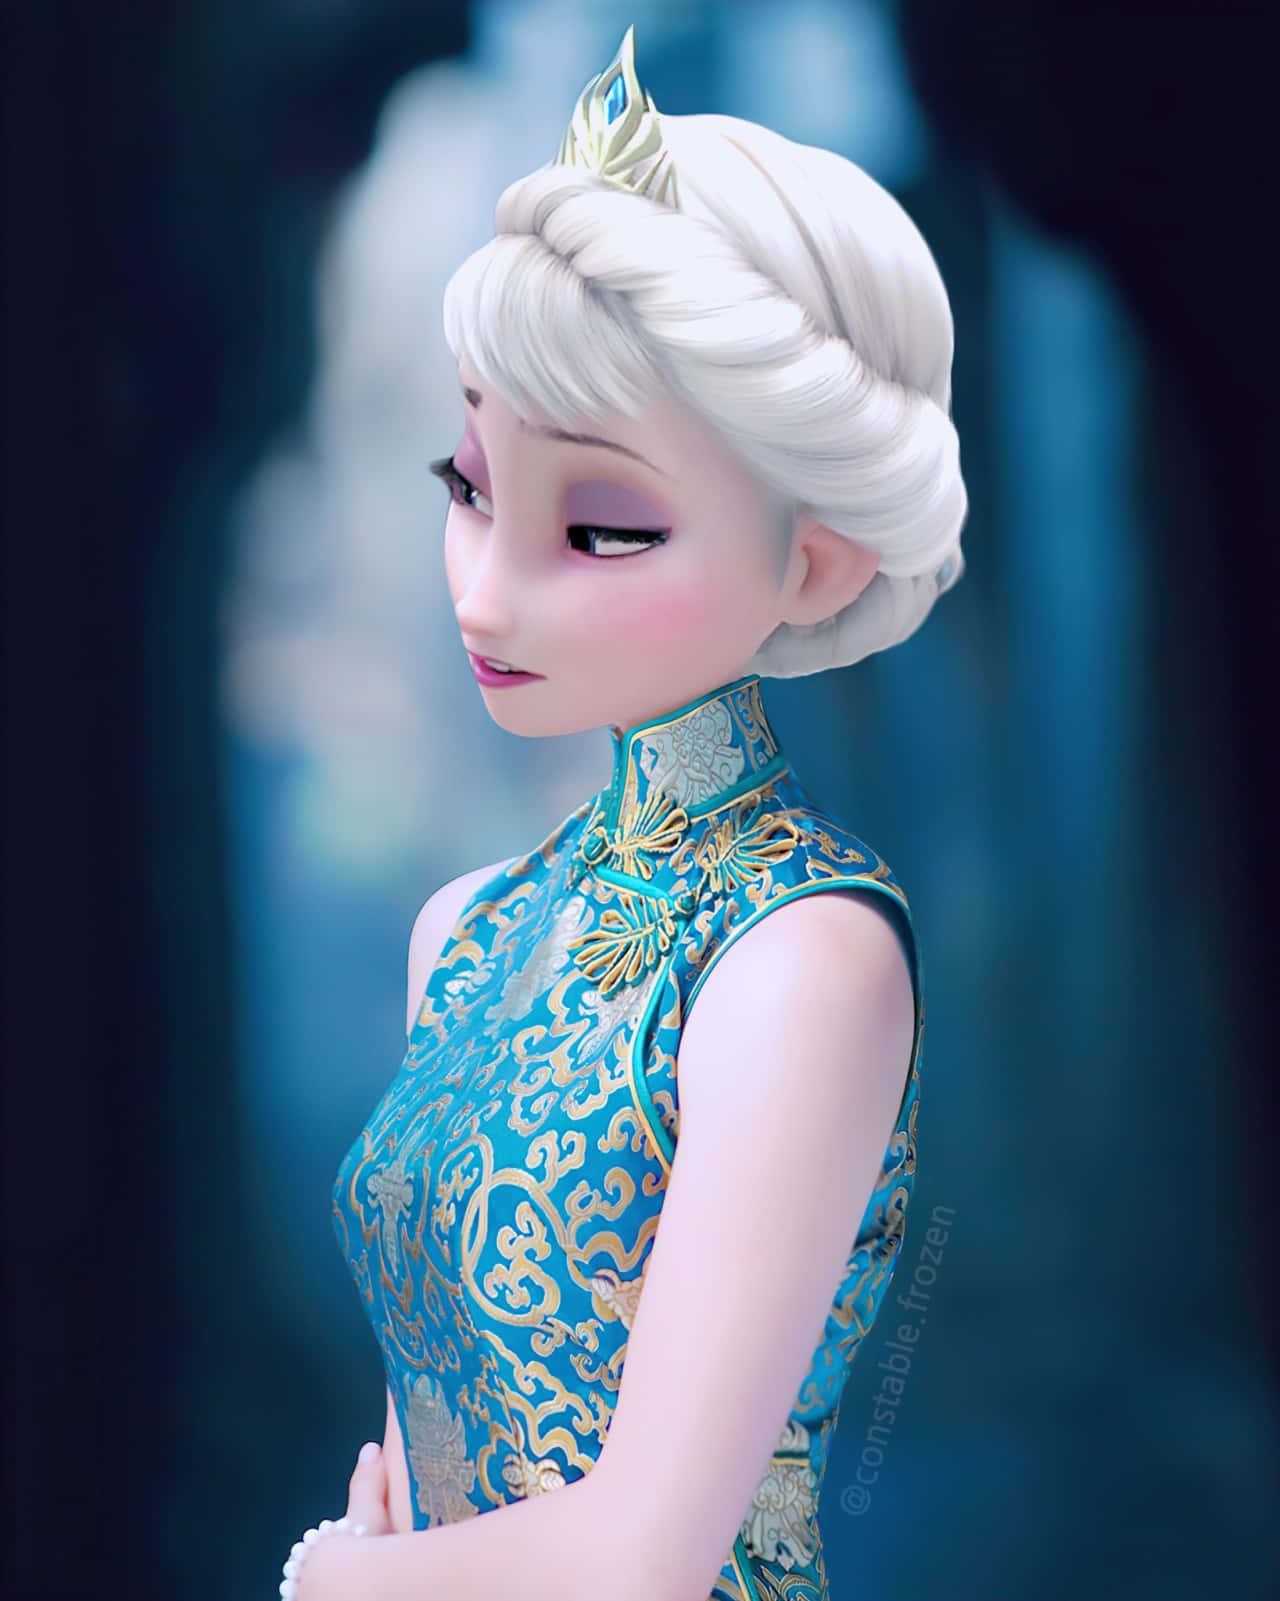 An elegant portrait of Elsa the snow queen from Disney's Frozen